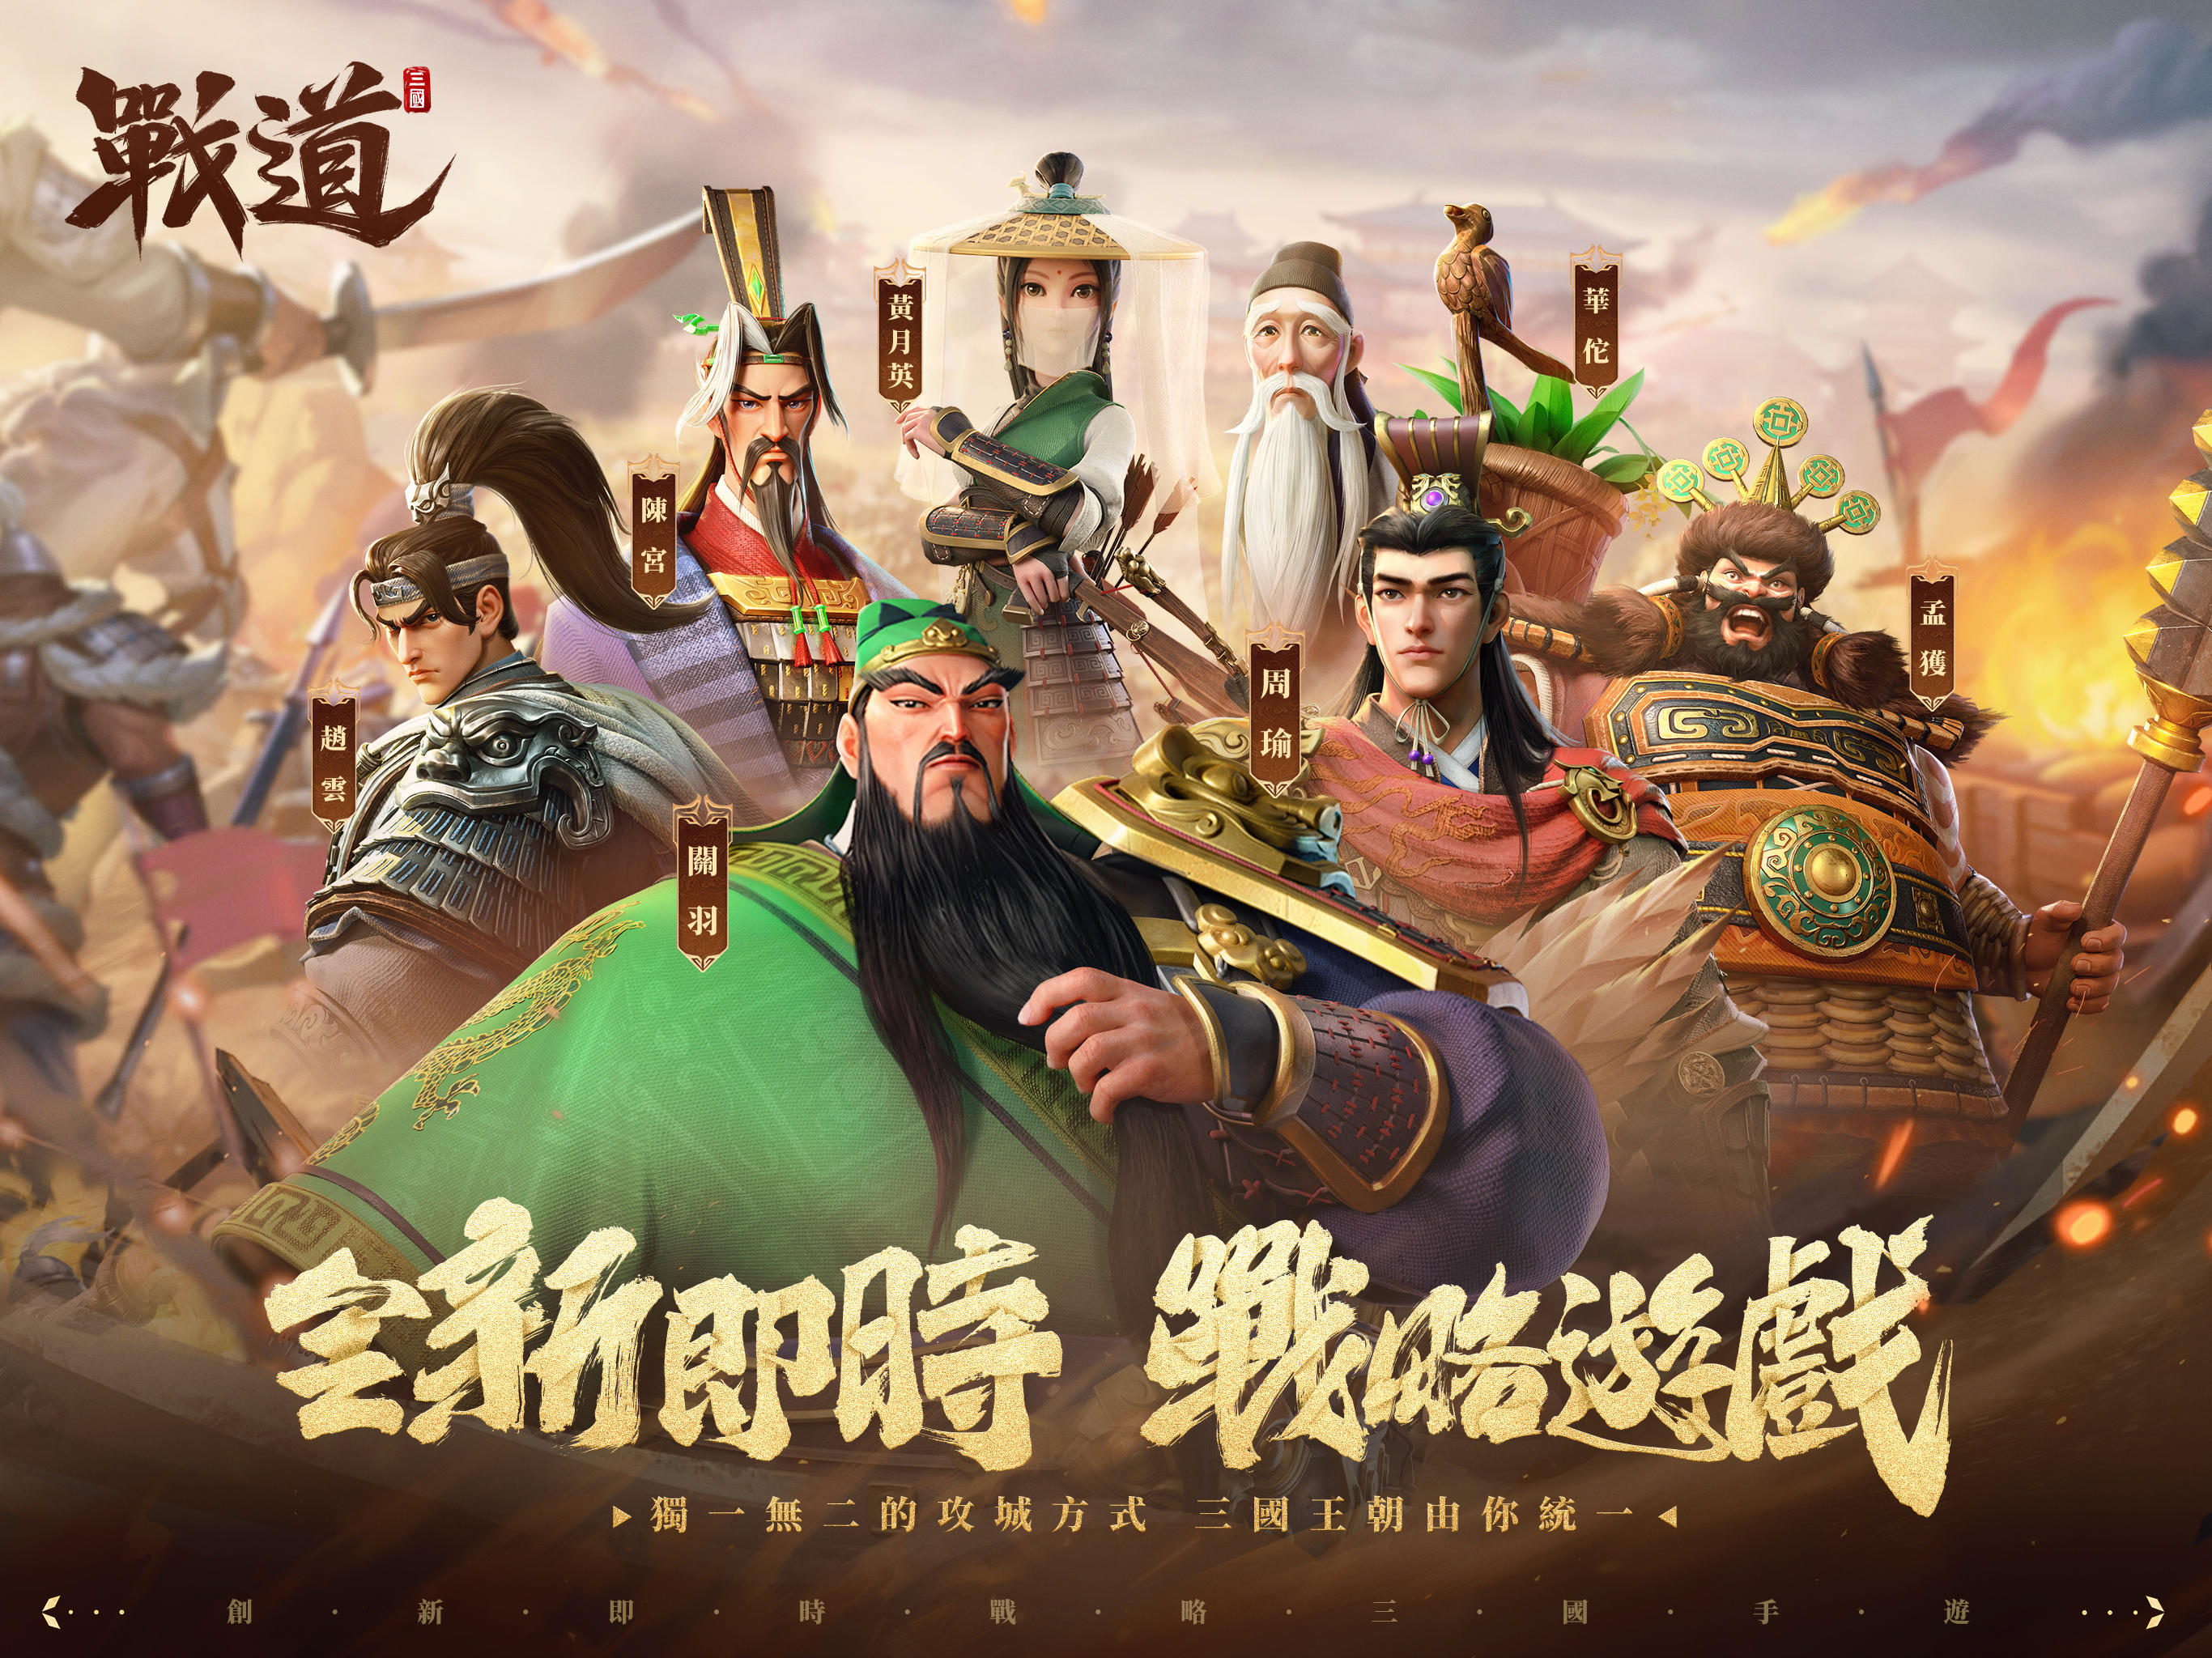 Screenshot 1 of Battle Road-Three Kingdoms na may Milyun-milyong Tao 1.0.0